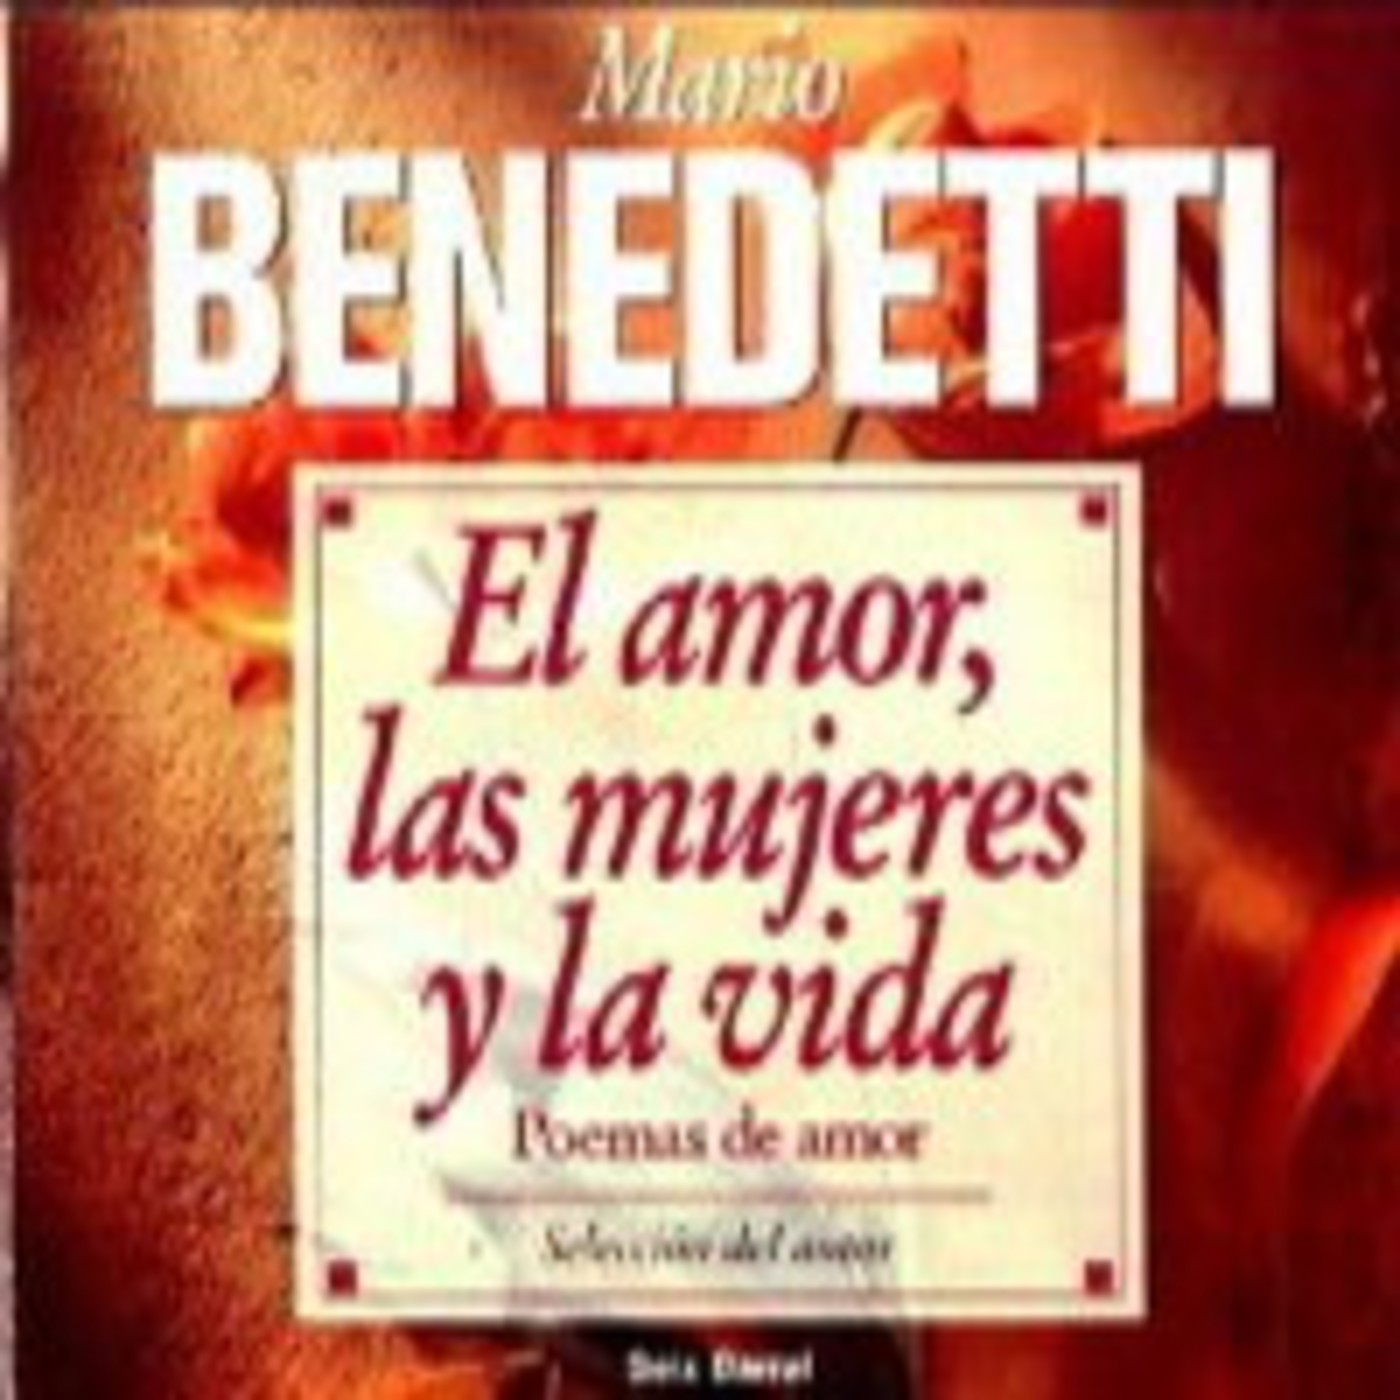 El amor, las mujeres y la vida -Mario Benedetti